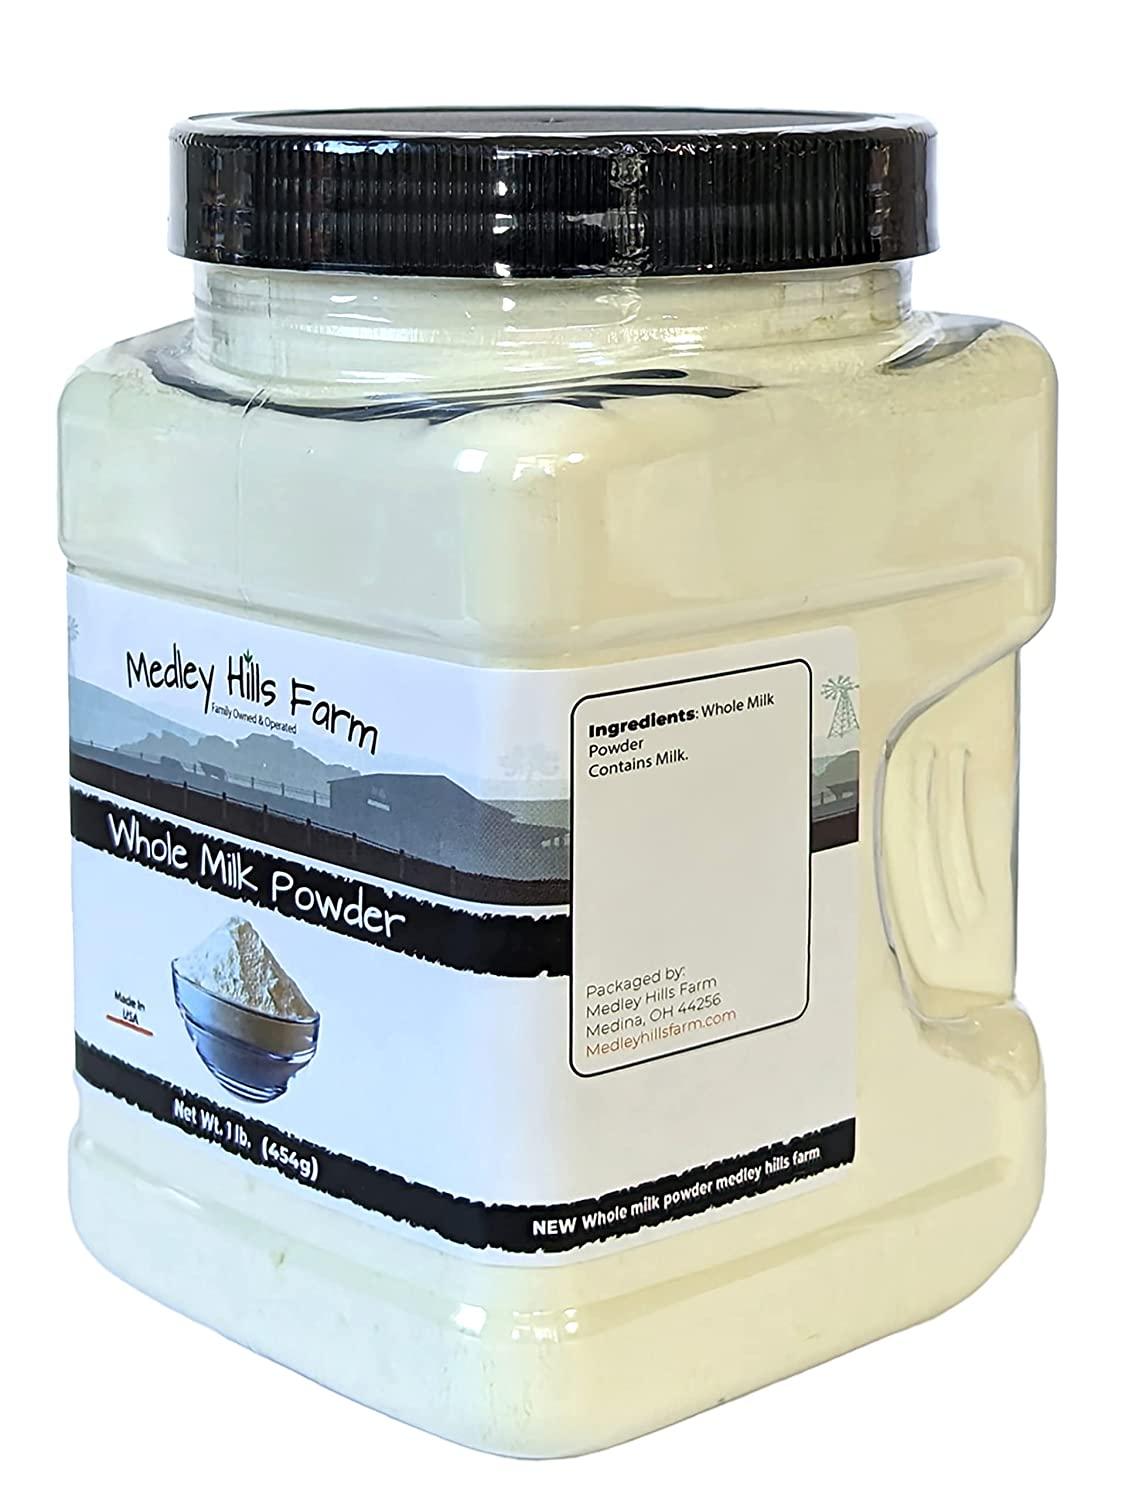 All American Hoosier Hill Farm Dairy Whole Milk Powder - 1 lb jar